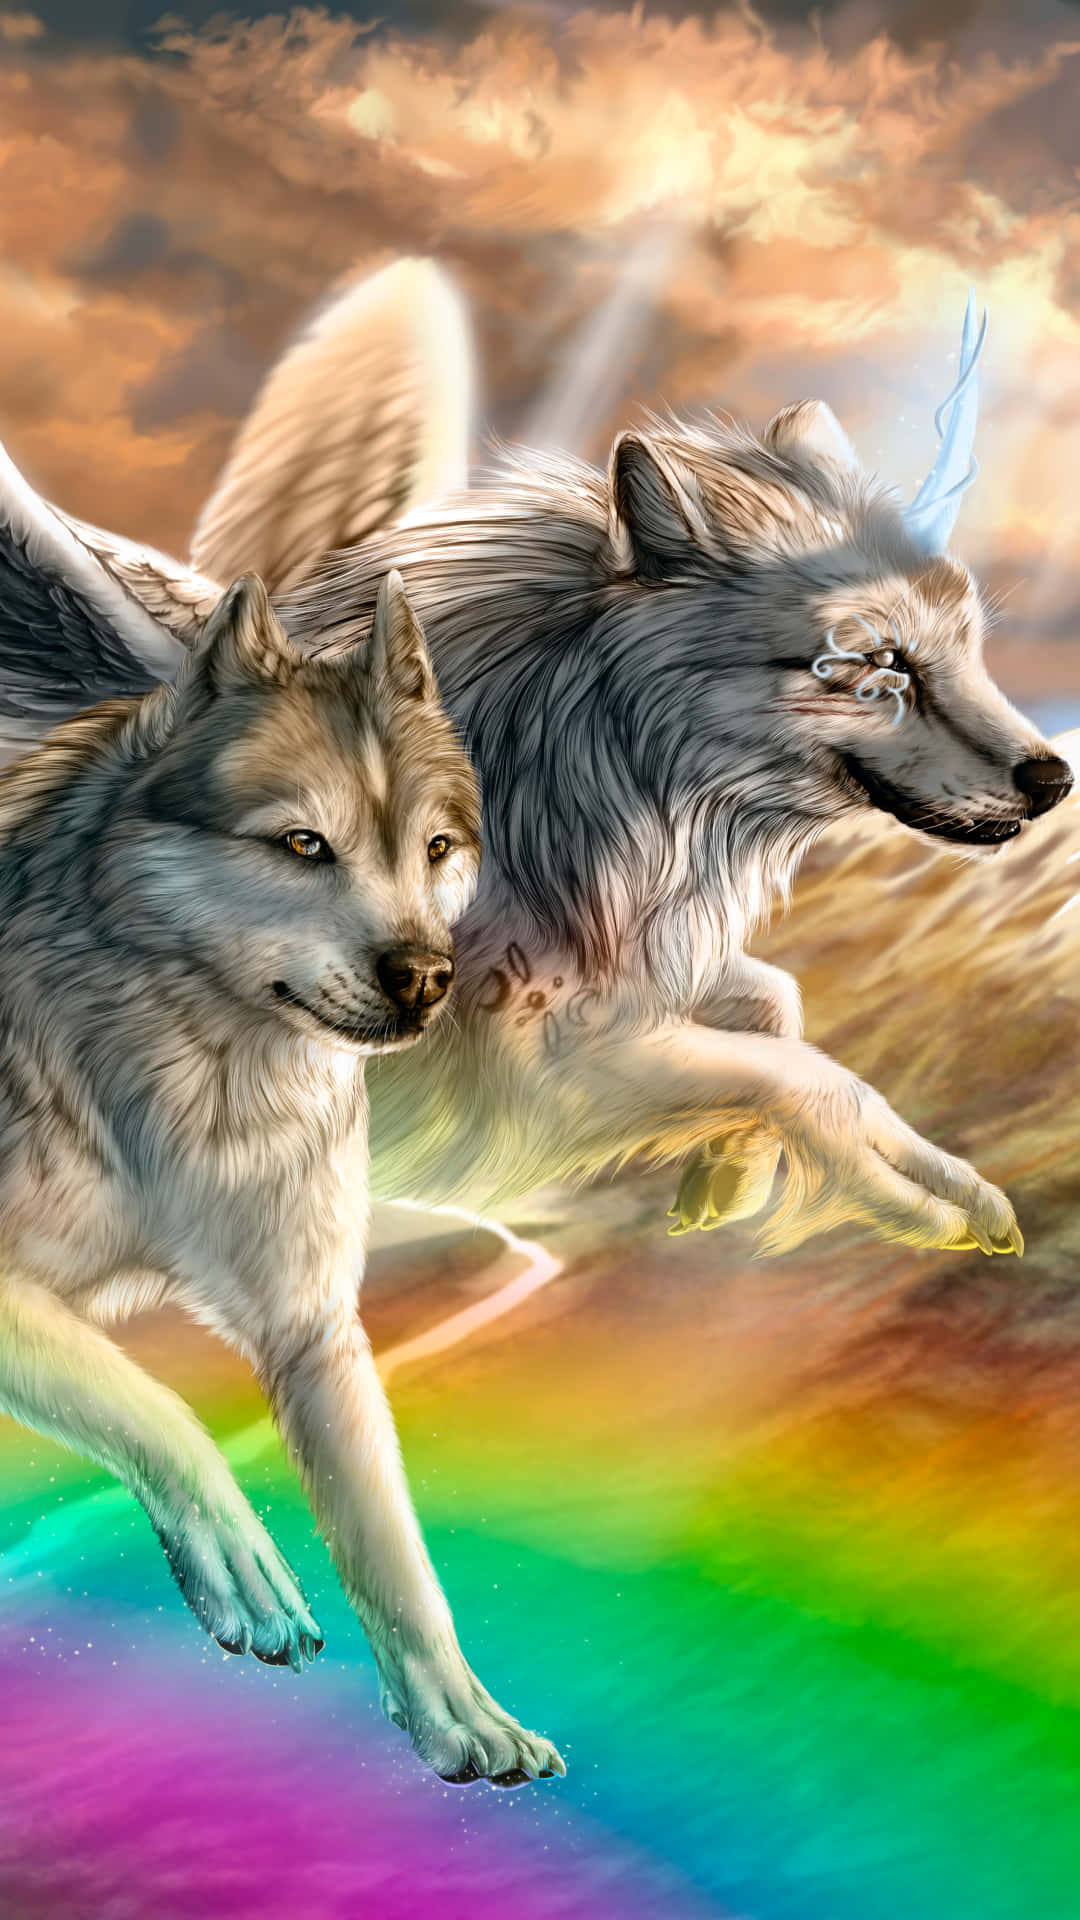 Schauin Die Farbenfrohen Augen Eines Wunderschönen Regenbogenwolfs. Wallpaper